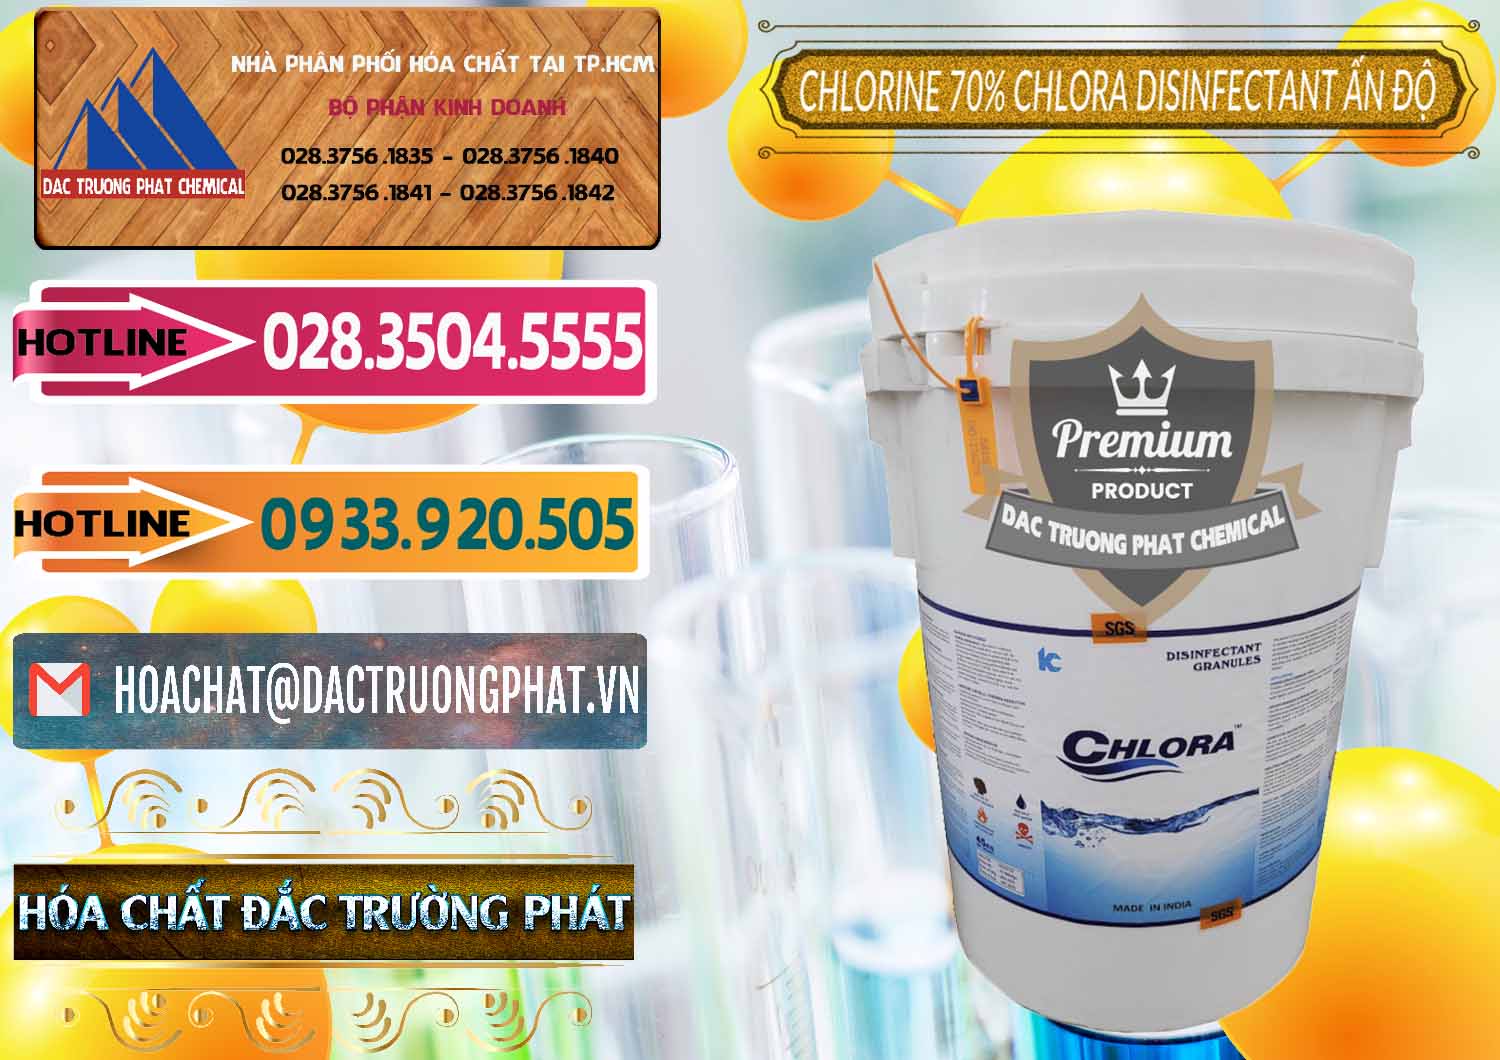 Cty phân phối & bán Chlorine – Clorin 70% Chlora Disinfectant Ấn Độ India - 0213 - Cty chuyên phân phối _ cung ứng hóa chất tại TP.HCM - dactruongphat.vn